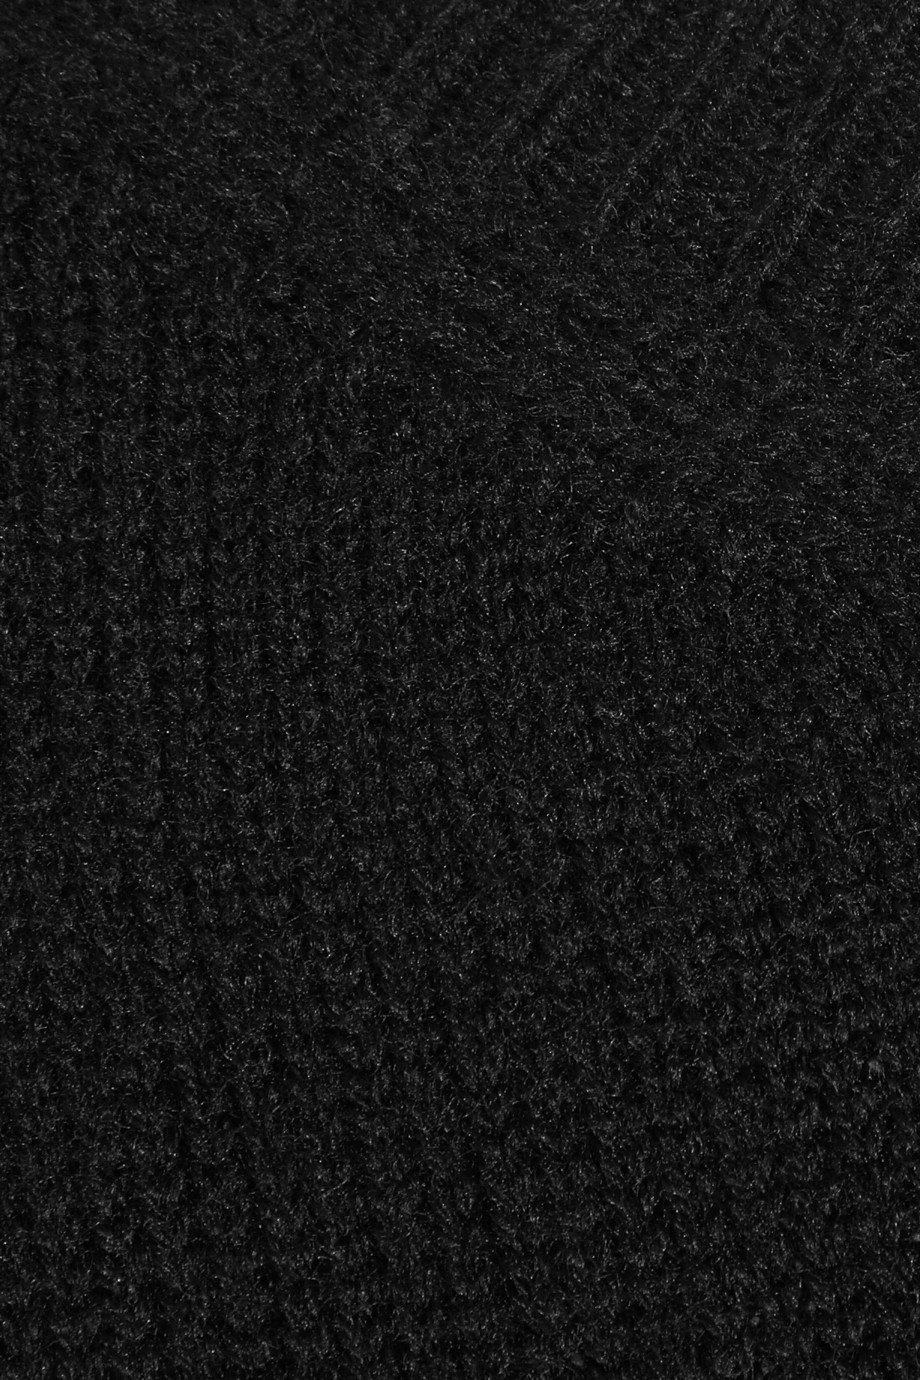 Miu Miu Wool Sweater Dress in Black - Lyst